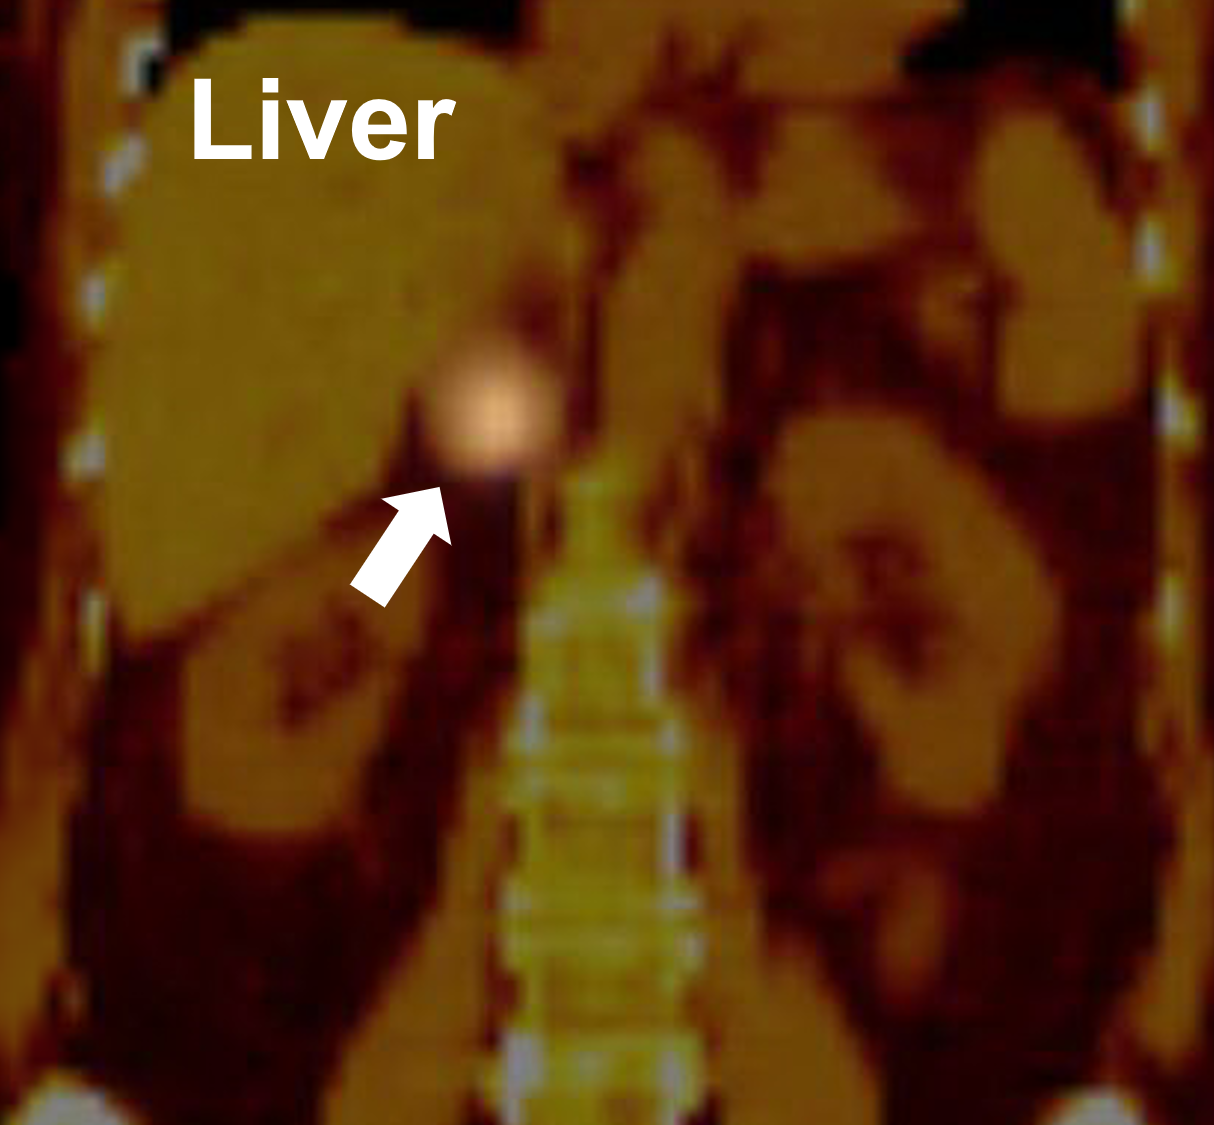 Skan MIBG wykazujący dodatni wychwyt w prawym nadnerczu (strzałka) świadczący o guzie chromochłonnym.